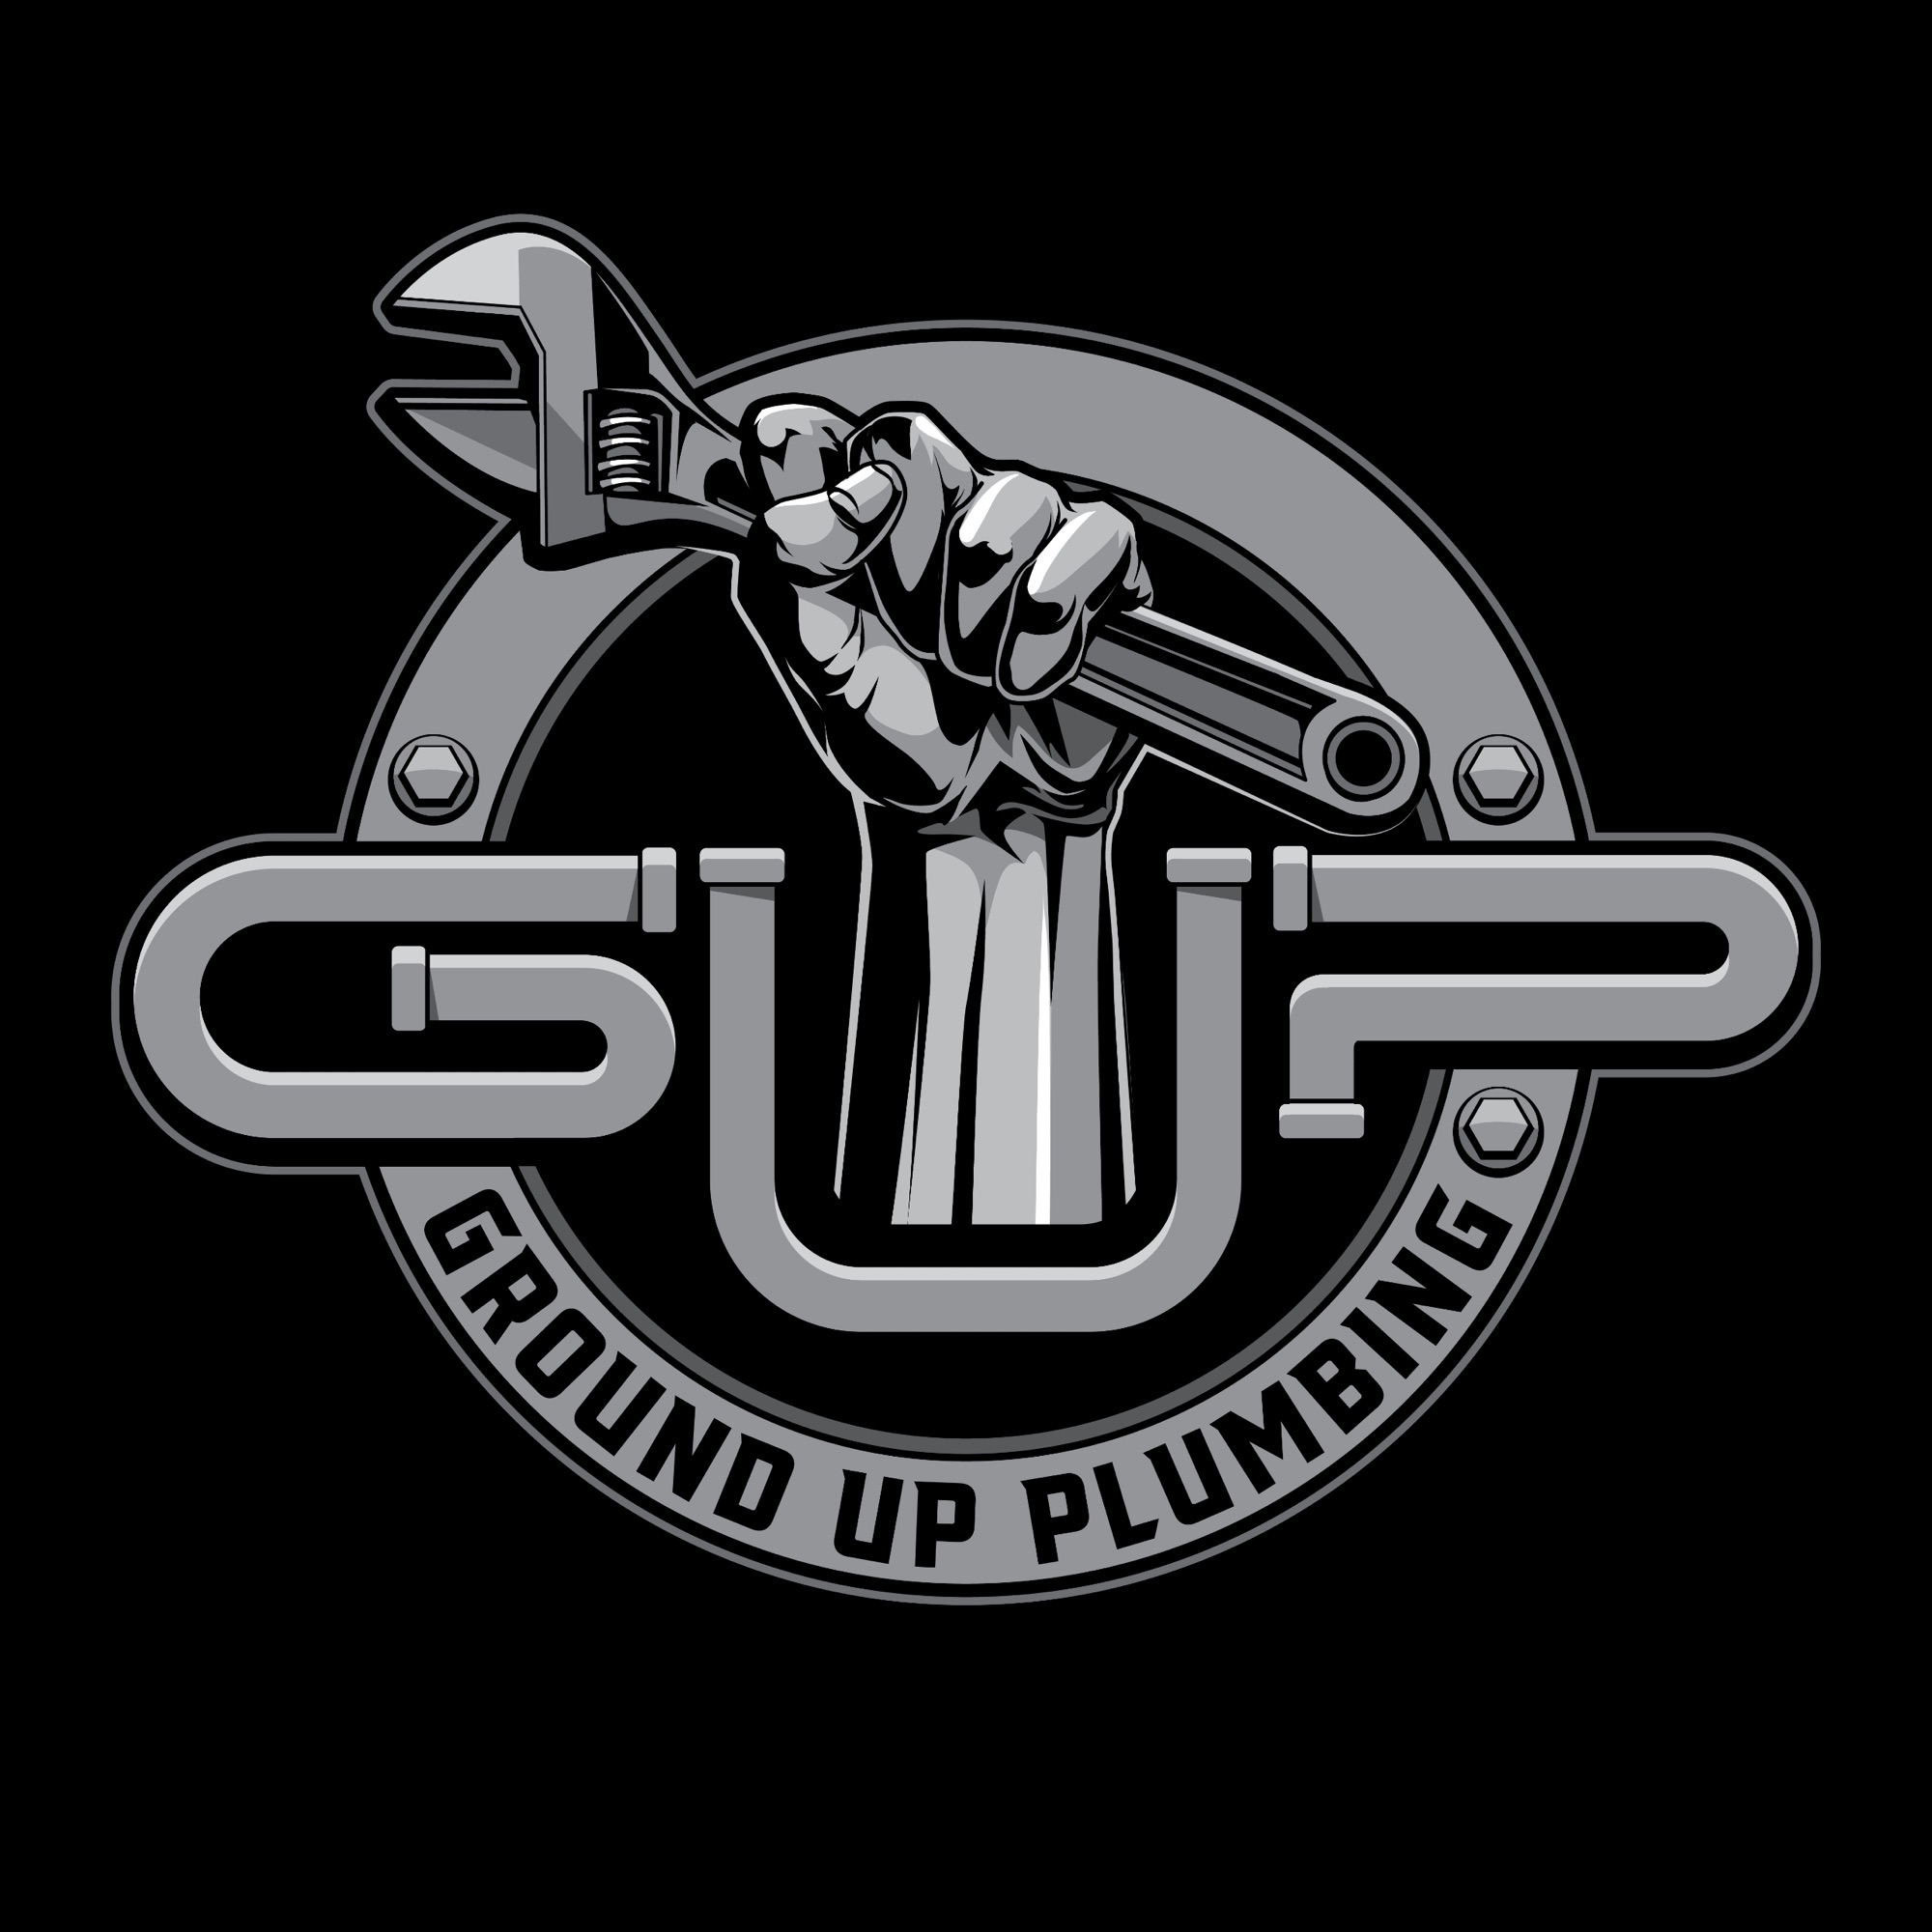 Ground Up Plumbing Logo